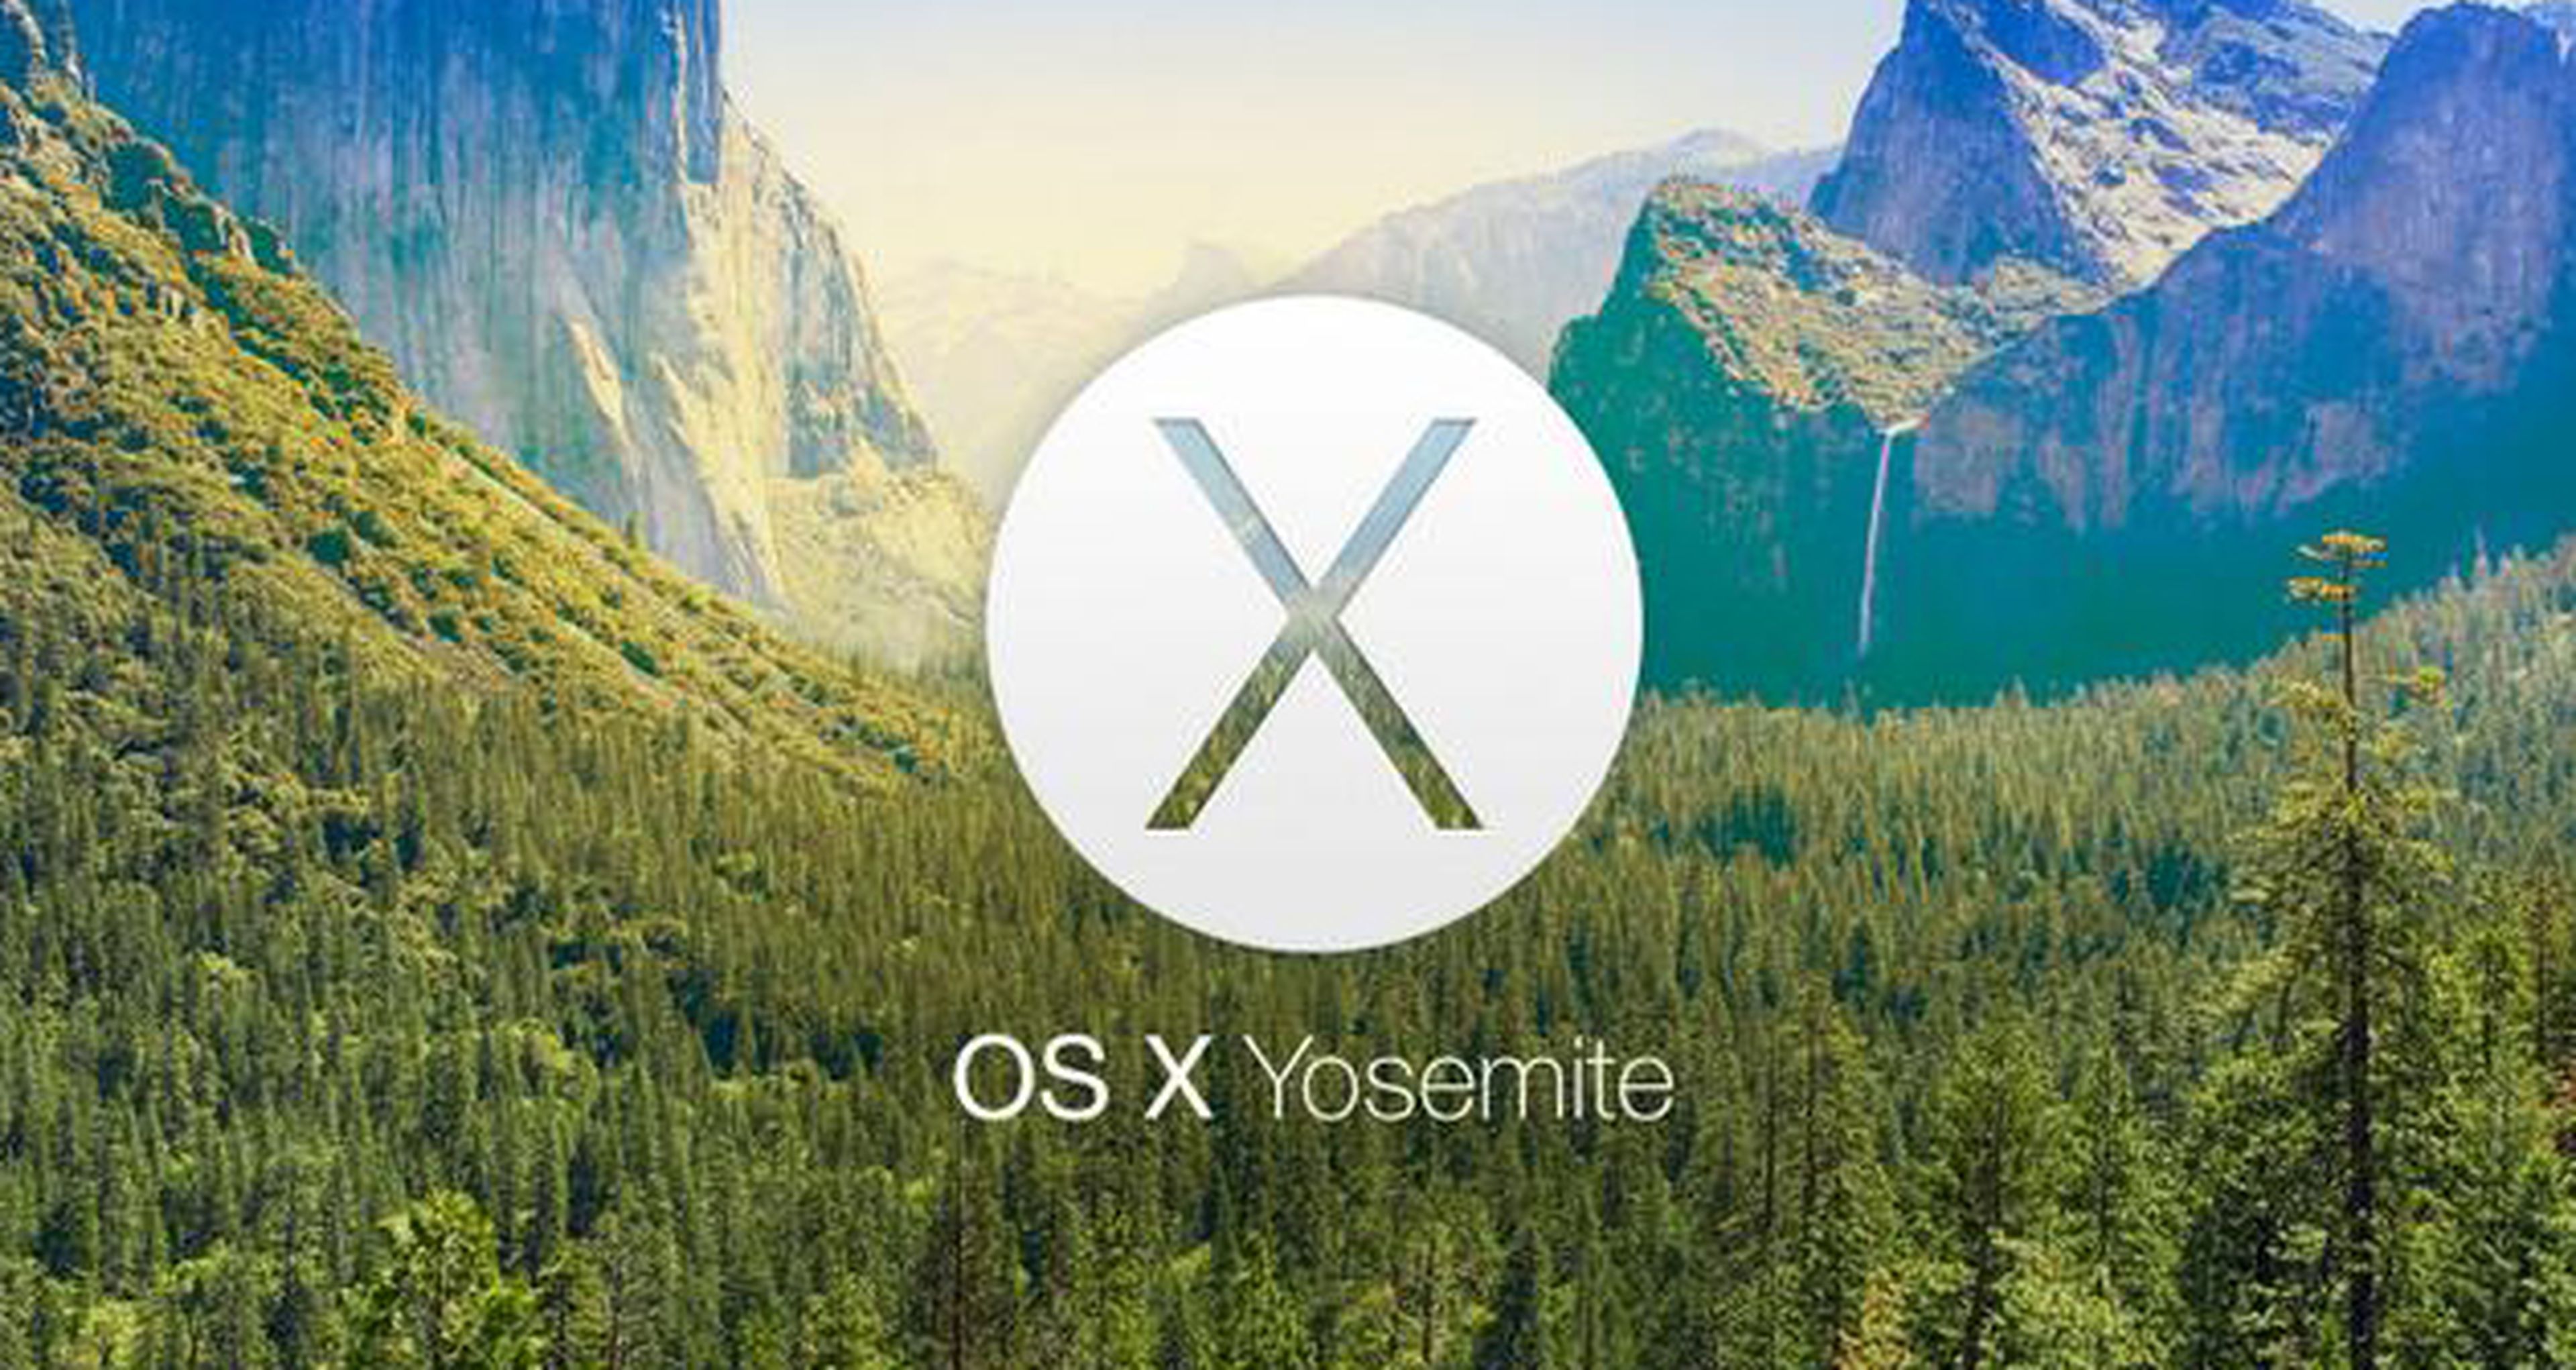 OS X Yosemite, el nuevo sistema operativo para Mac